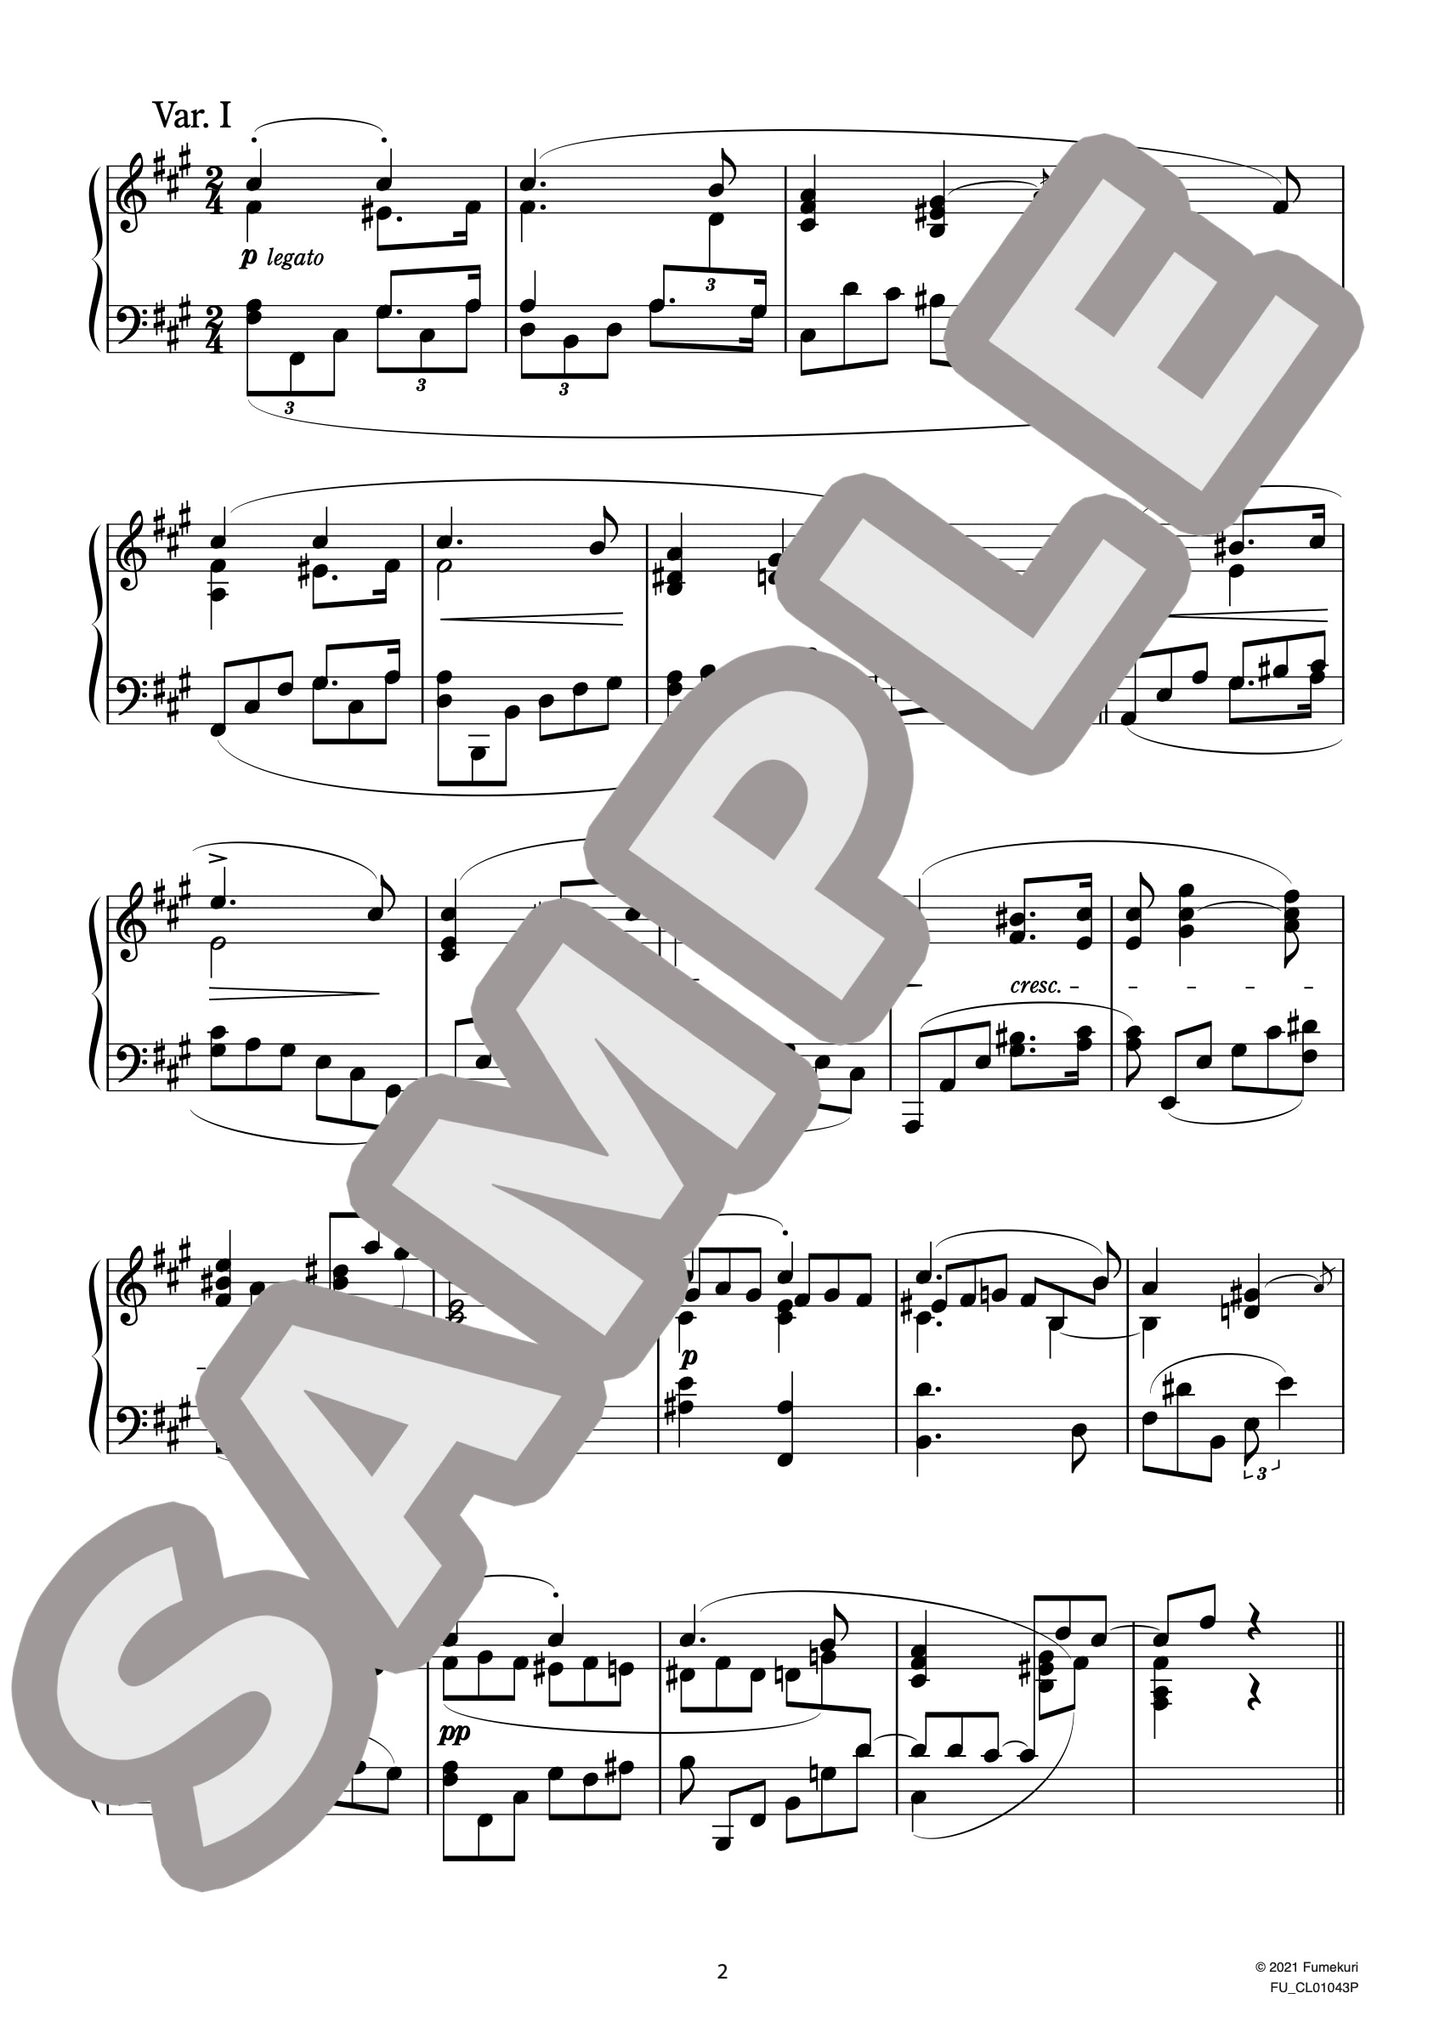 ロベルト・シューマンの主題による変奏曲 作品20（CLARA.S) / クラシック・オリジナル楽曲【中上級】